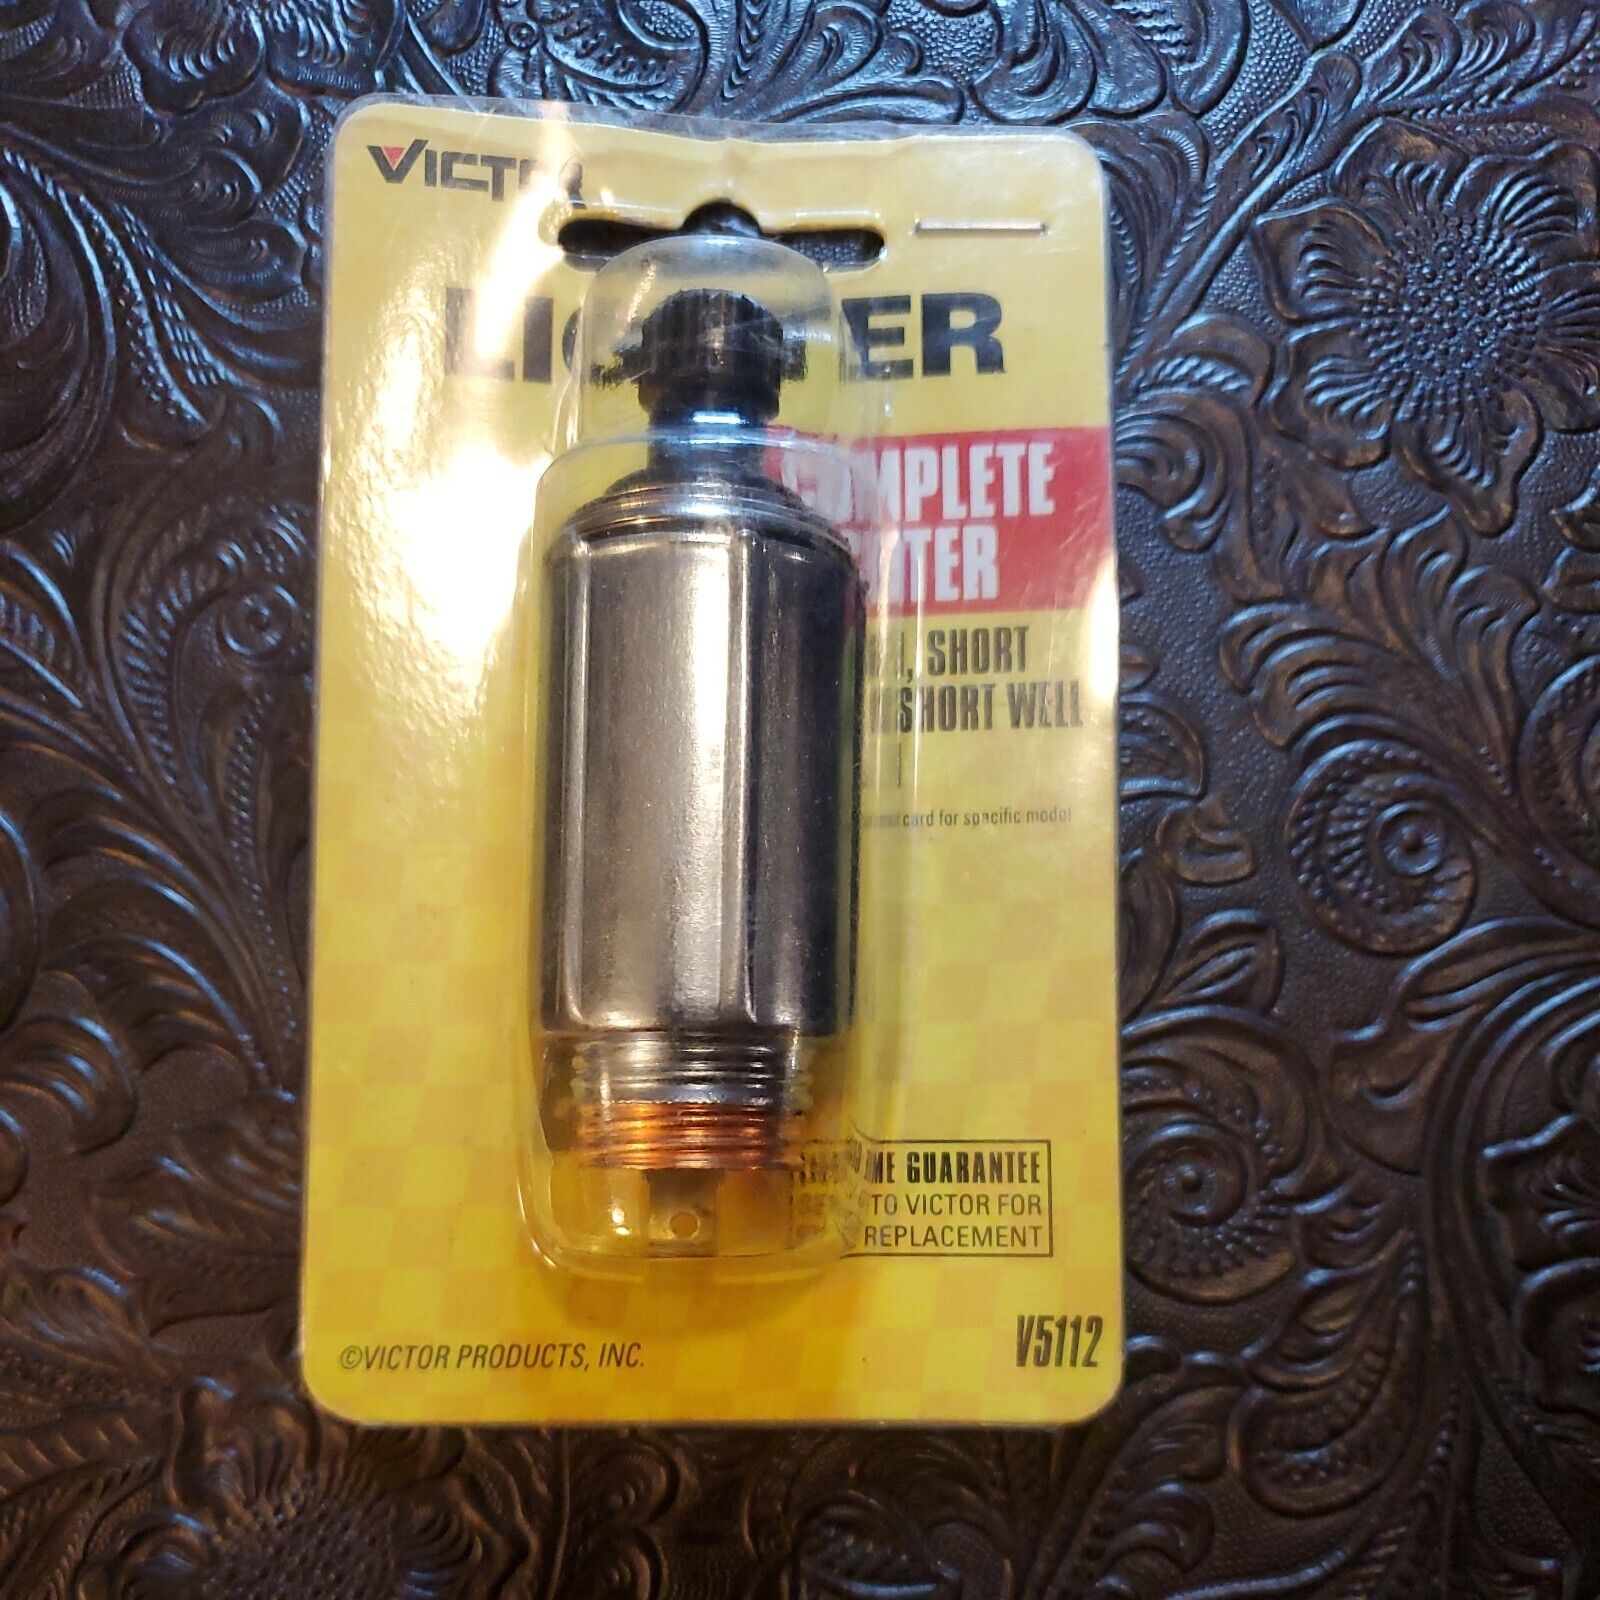 Victor Complete Lighter for GM Short Knob Short Well Design 05112-8 Cigarette